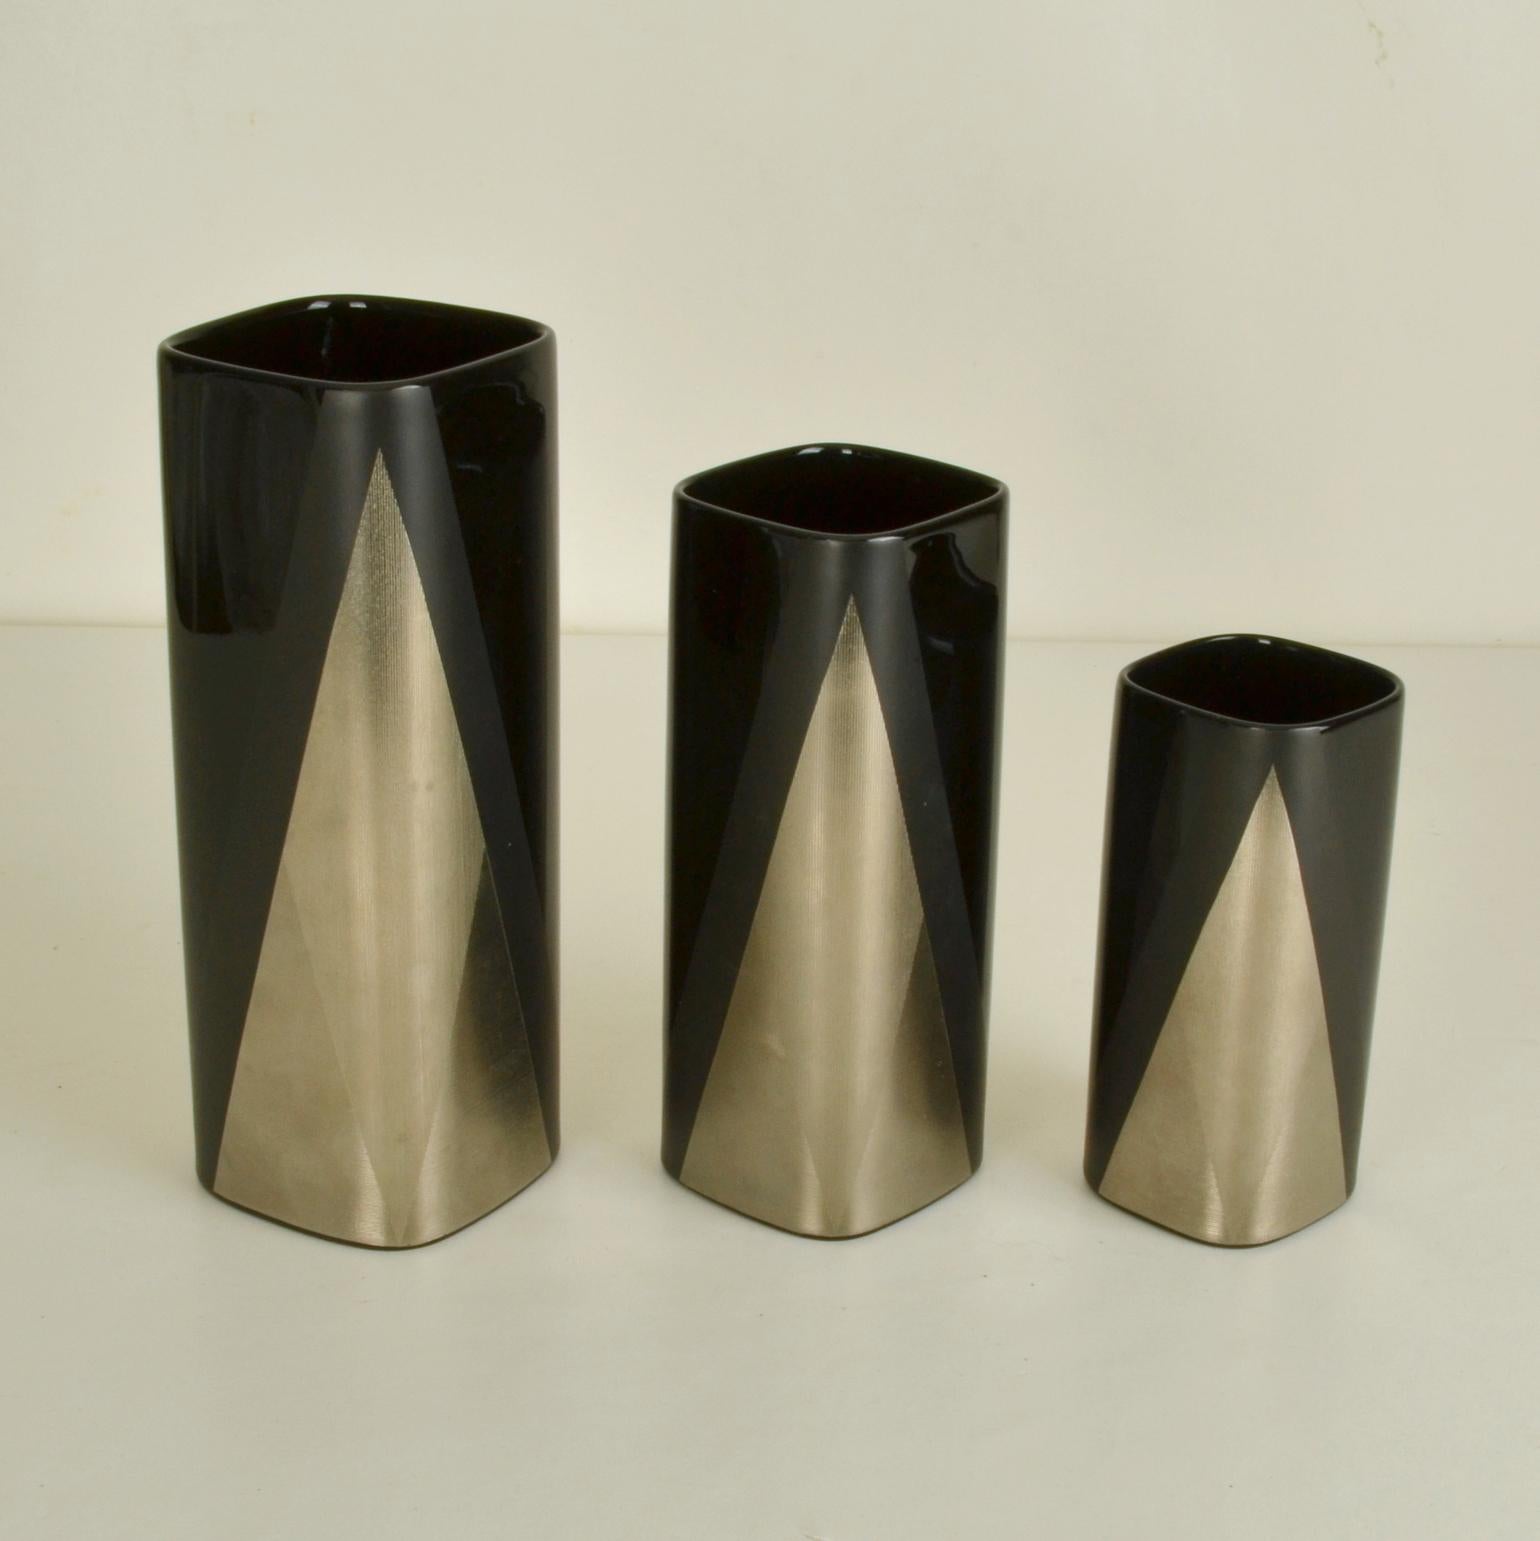 Satz schwarzer Rosenthal-Porzellanvasen, handgefertigt in einem erhabenen, linearen, V-förmigen geometrischen Muster, das auf runden, rechteckigen Vasen ruht. Helmut Dresler war ein Designer, der neue, einzigartige Dekorationstechniken entwickelte,